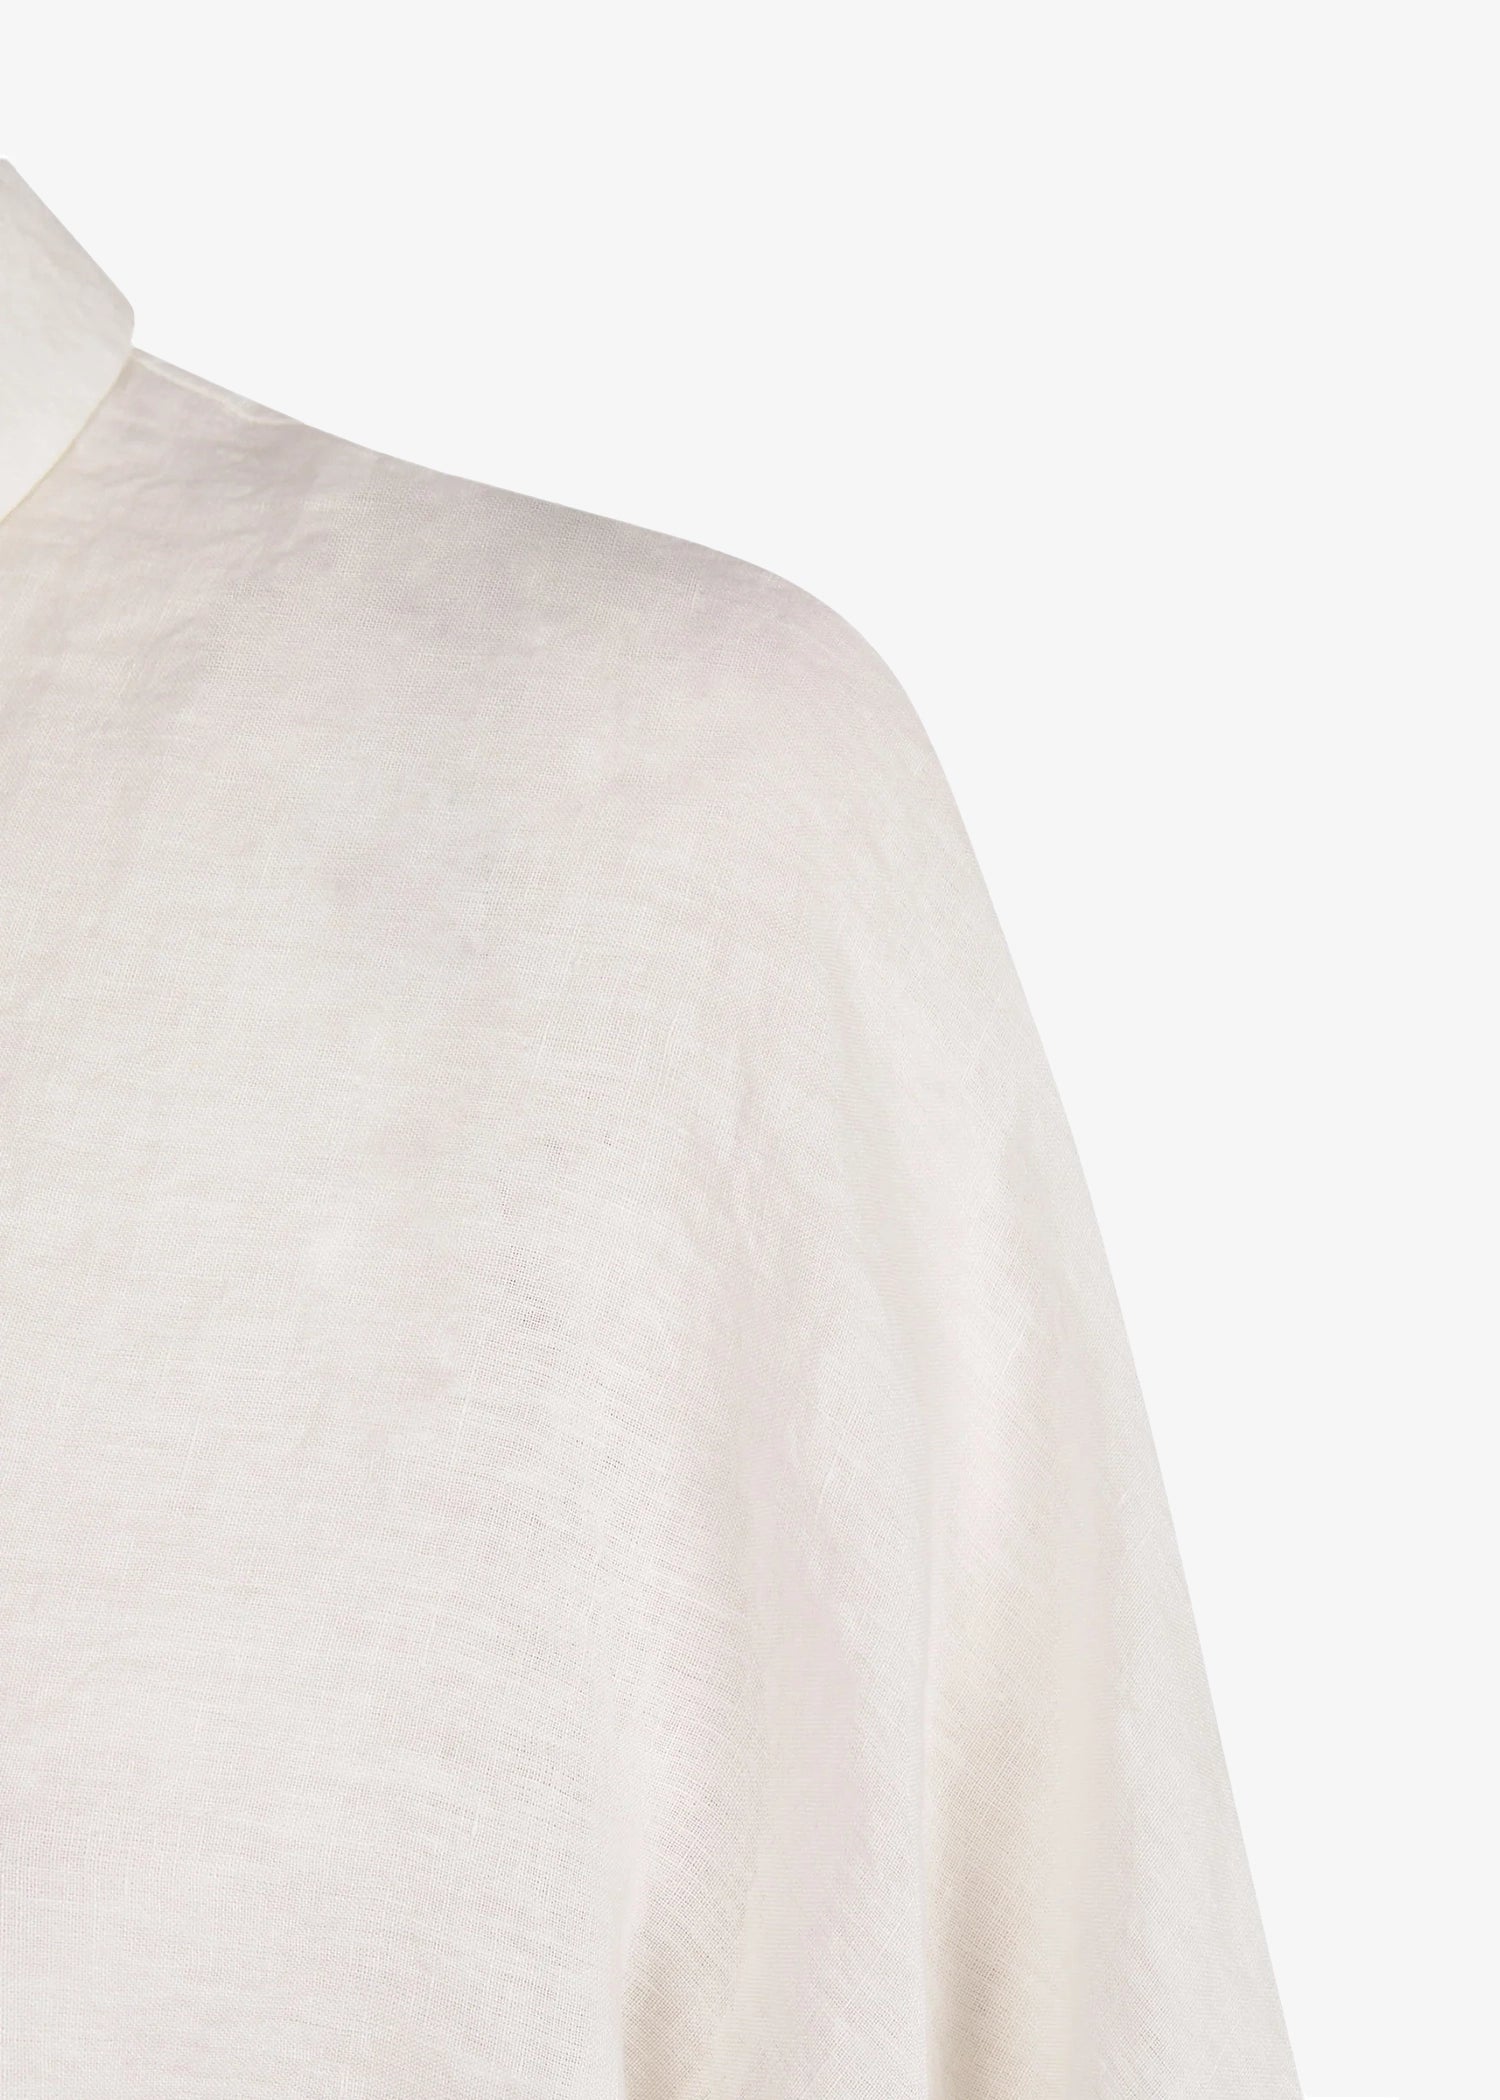 Cortana-Theresa-Ecru-Linen-Shirt